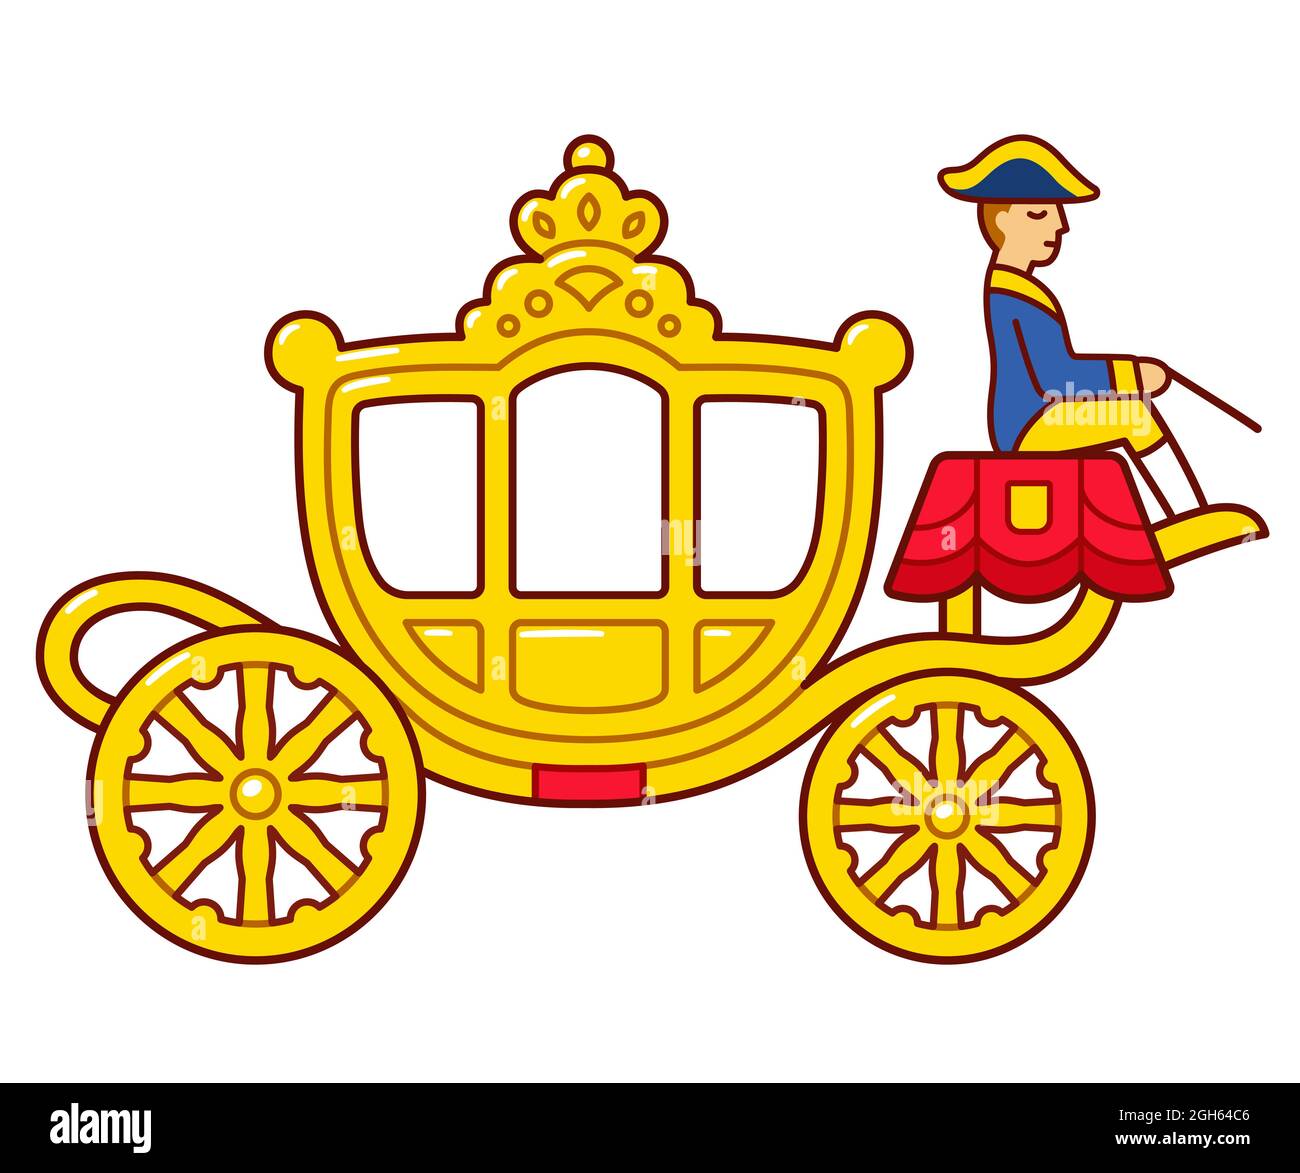 Gouden Koets (entraîneur d'or) chariot de famille royale néerlandais utilisé à Prinsjesdag (Prince Day). Dessin mignon de dessin animé, illustration de clip art vectoriel. Illustration de Vecteur